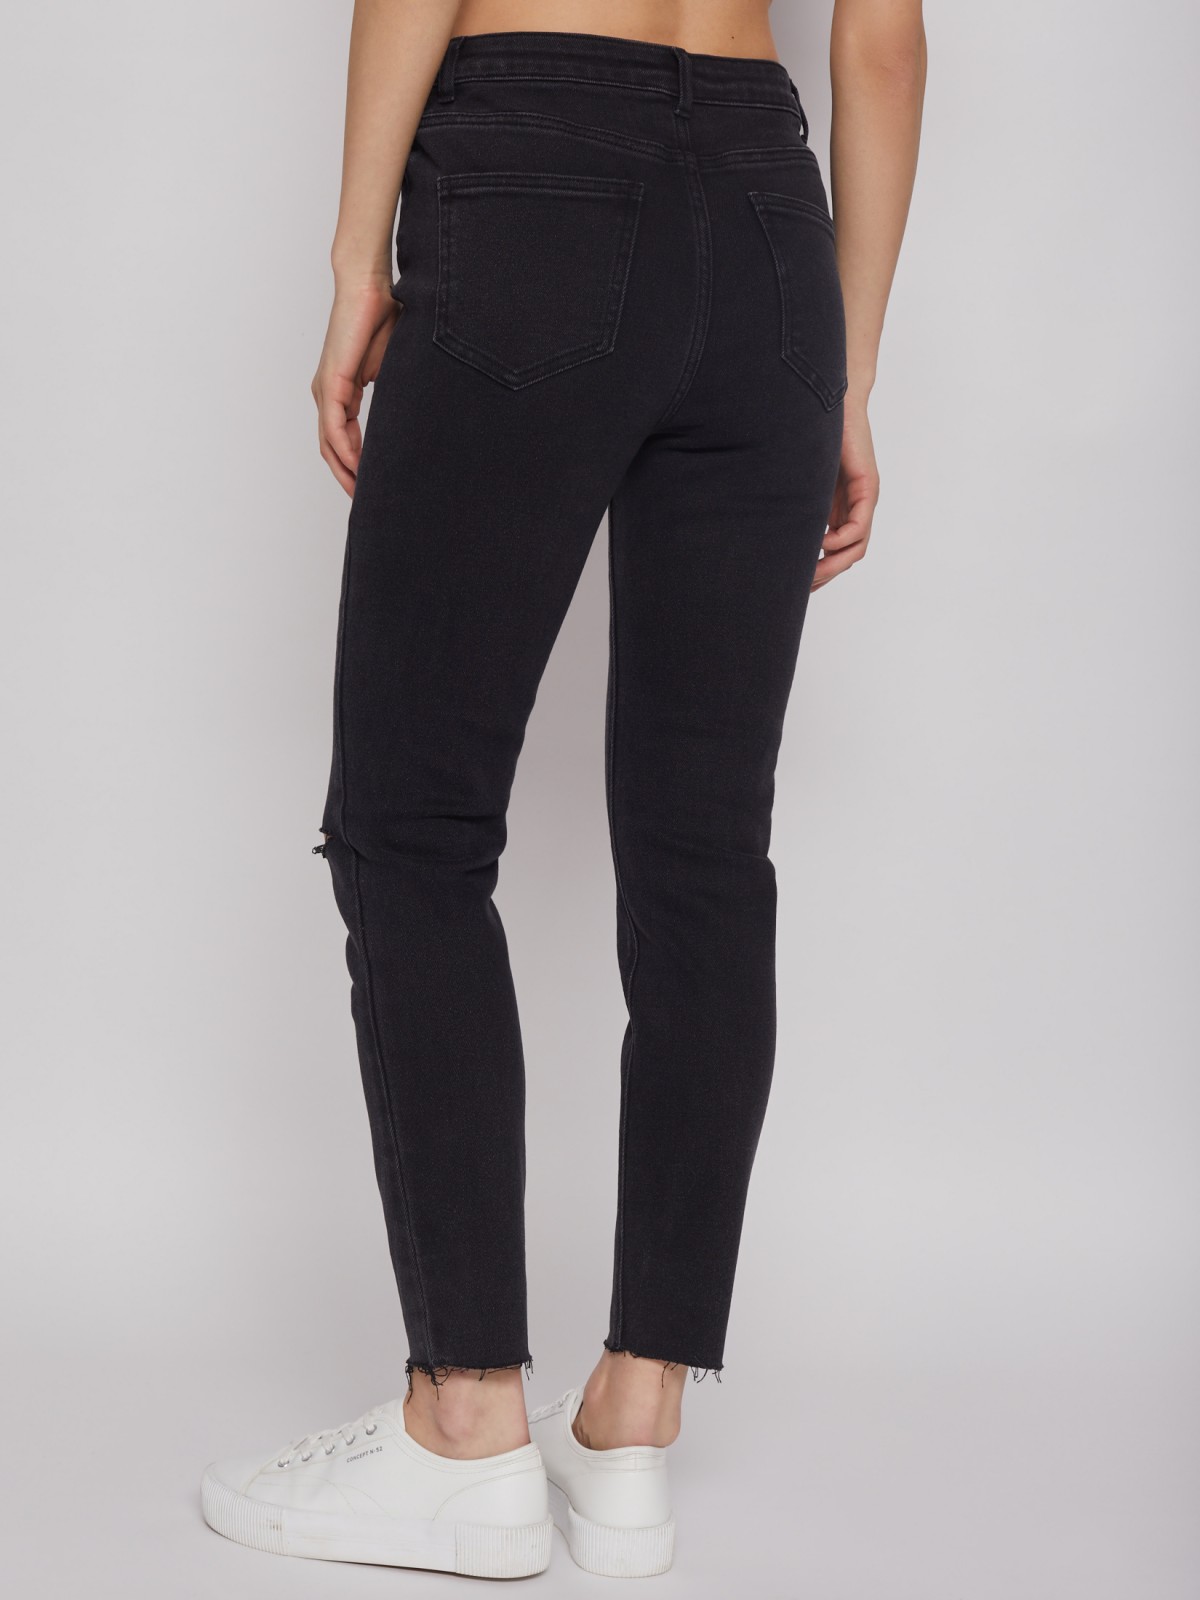 Брюки джинсовые zolla 22221711S043, цвет черный, размер 25 - фото 6